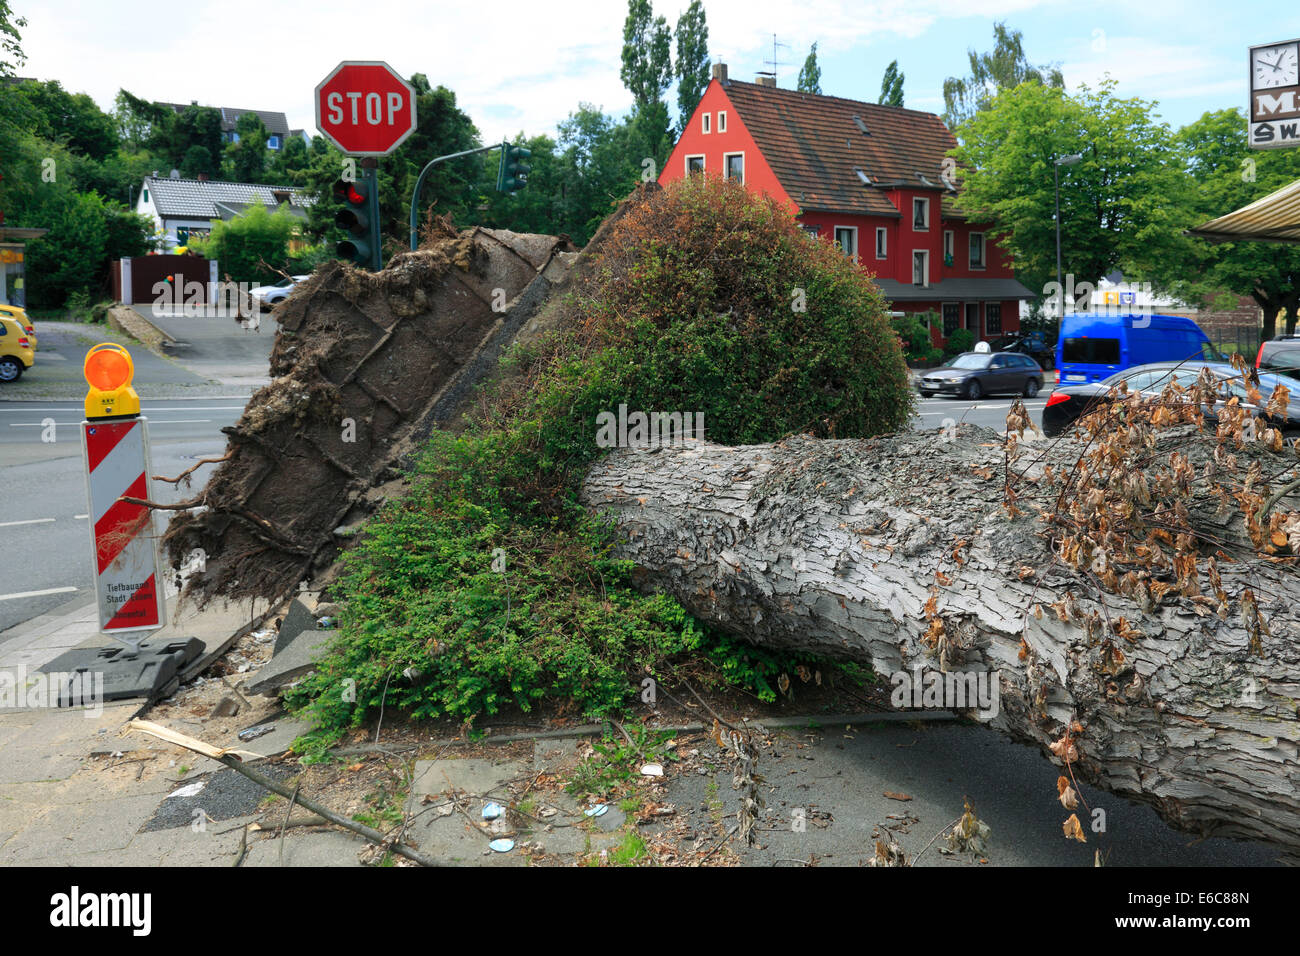 Sturm Schäden durch Depression "Ela" auf 9. Juni 2014 eine 10. Juni 2014, entwurzelte Baum an Ecke Velberter Straße, Heidhauser Strasse und Wintgenstrasse in D-Essen-Fischlaken, Ruhrgebiet, Rheinland, Nordrhein-Westfalen, NRW Stockfoto